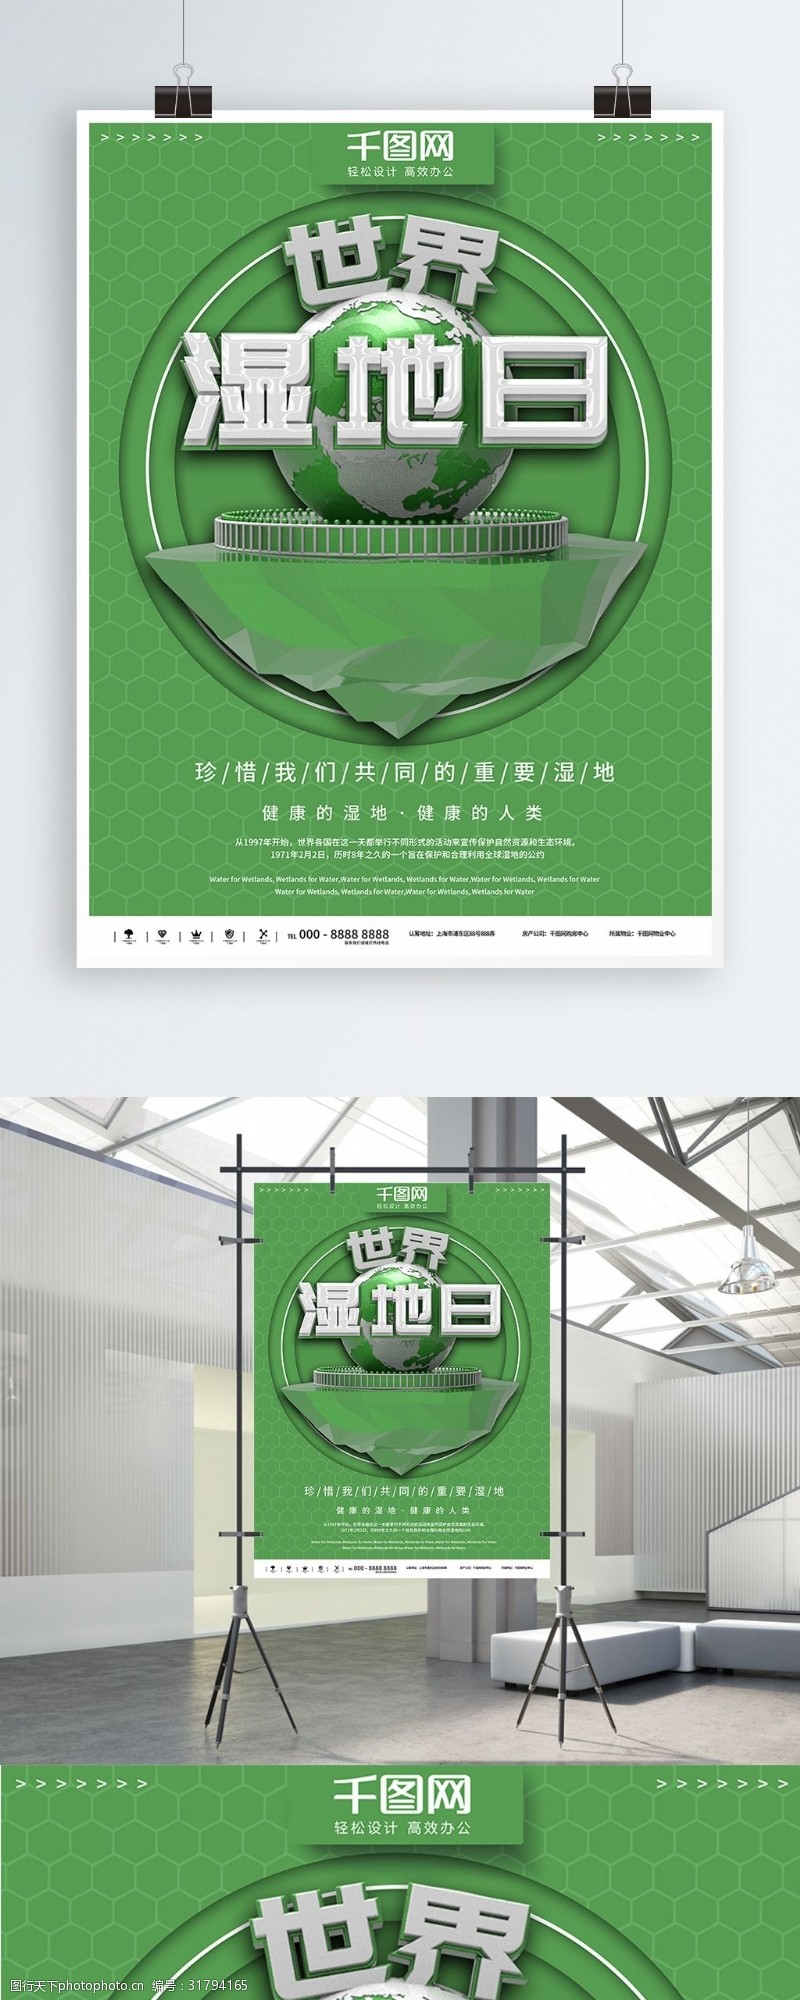 体育论坛绿色简约世界湿地日公益宣传海报